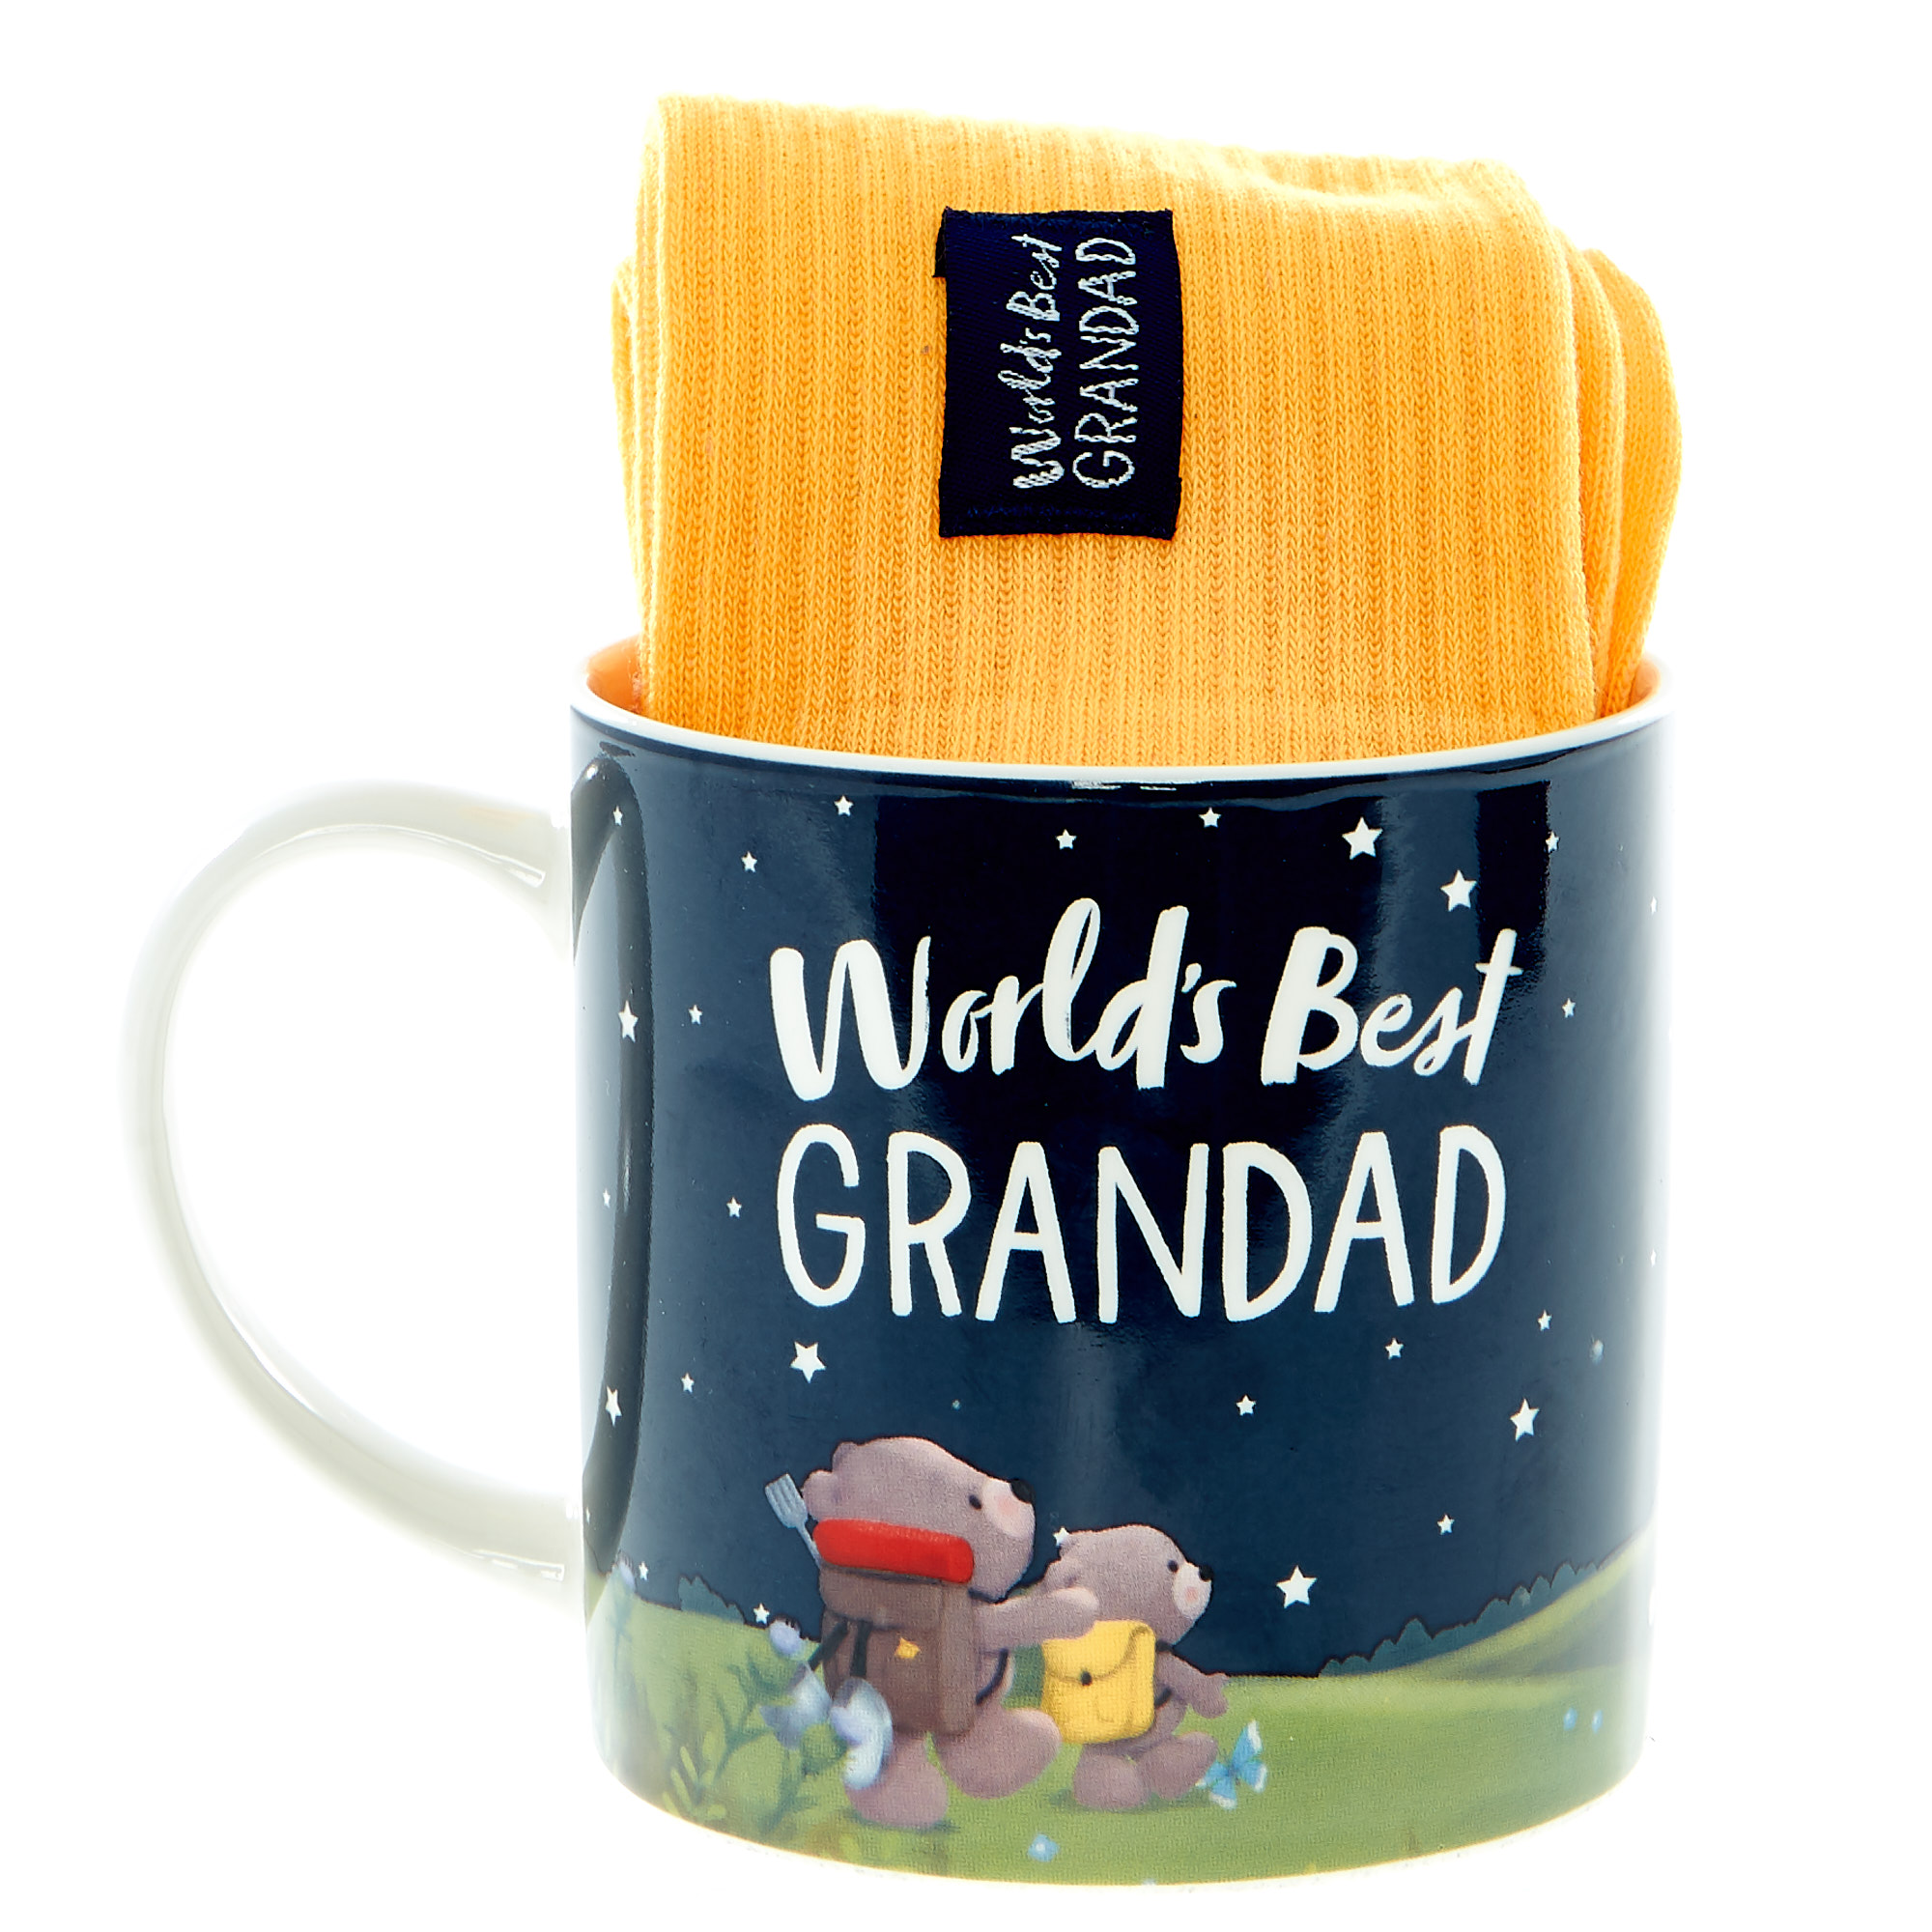  World's Best Grandad Hugs Mug & Socks Set